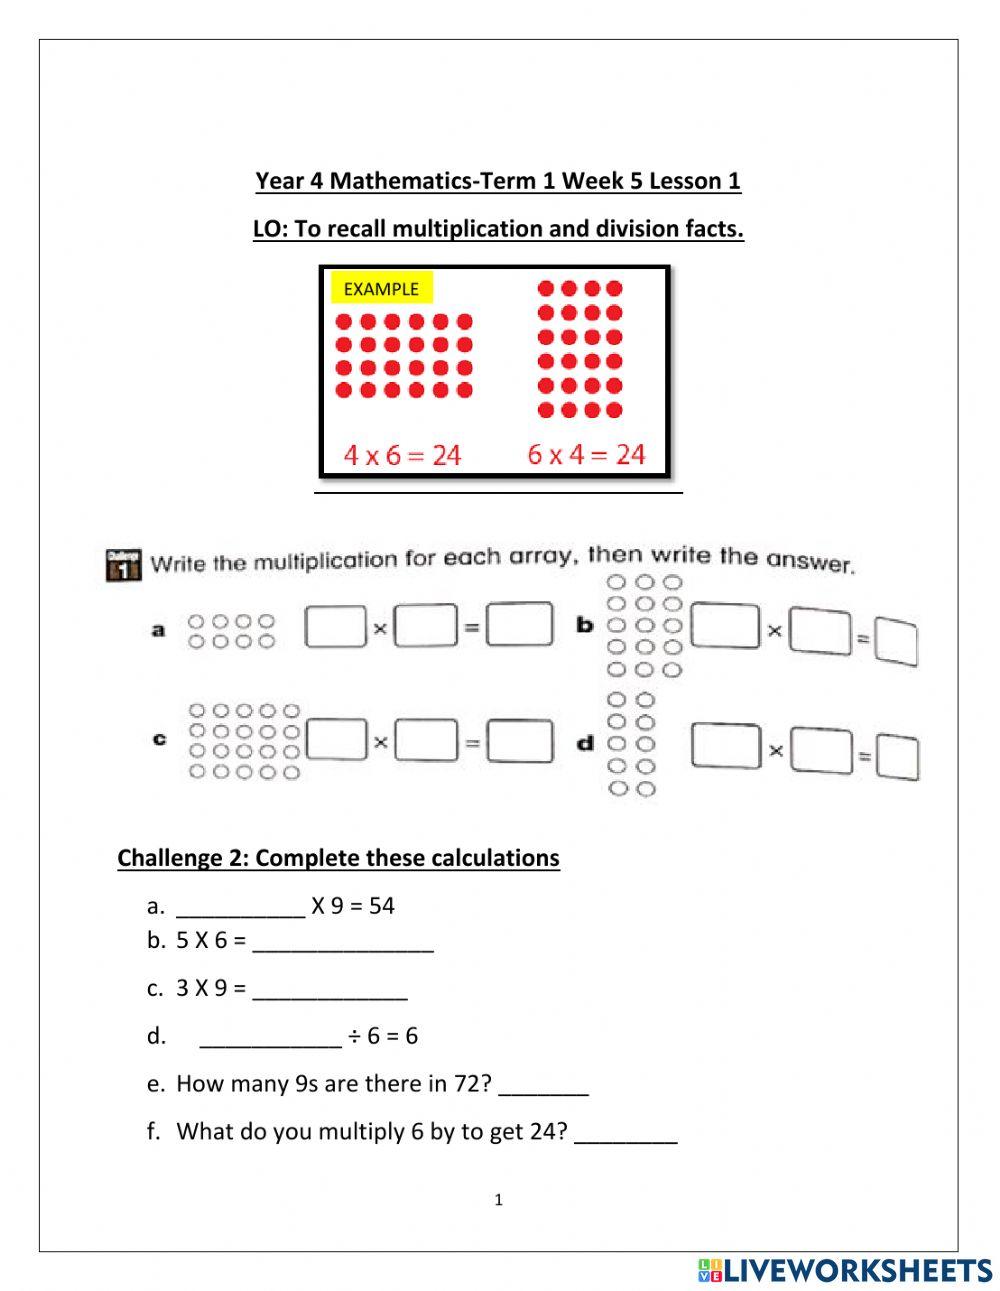 DIS Maths term 1 week 5 lesson 1